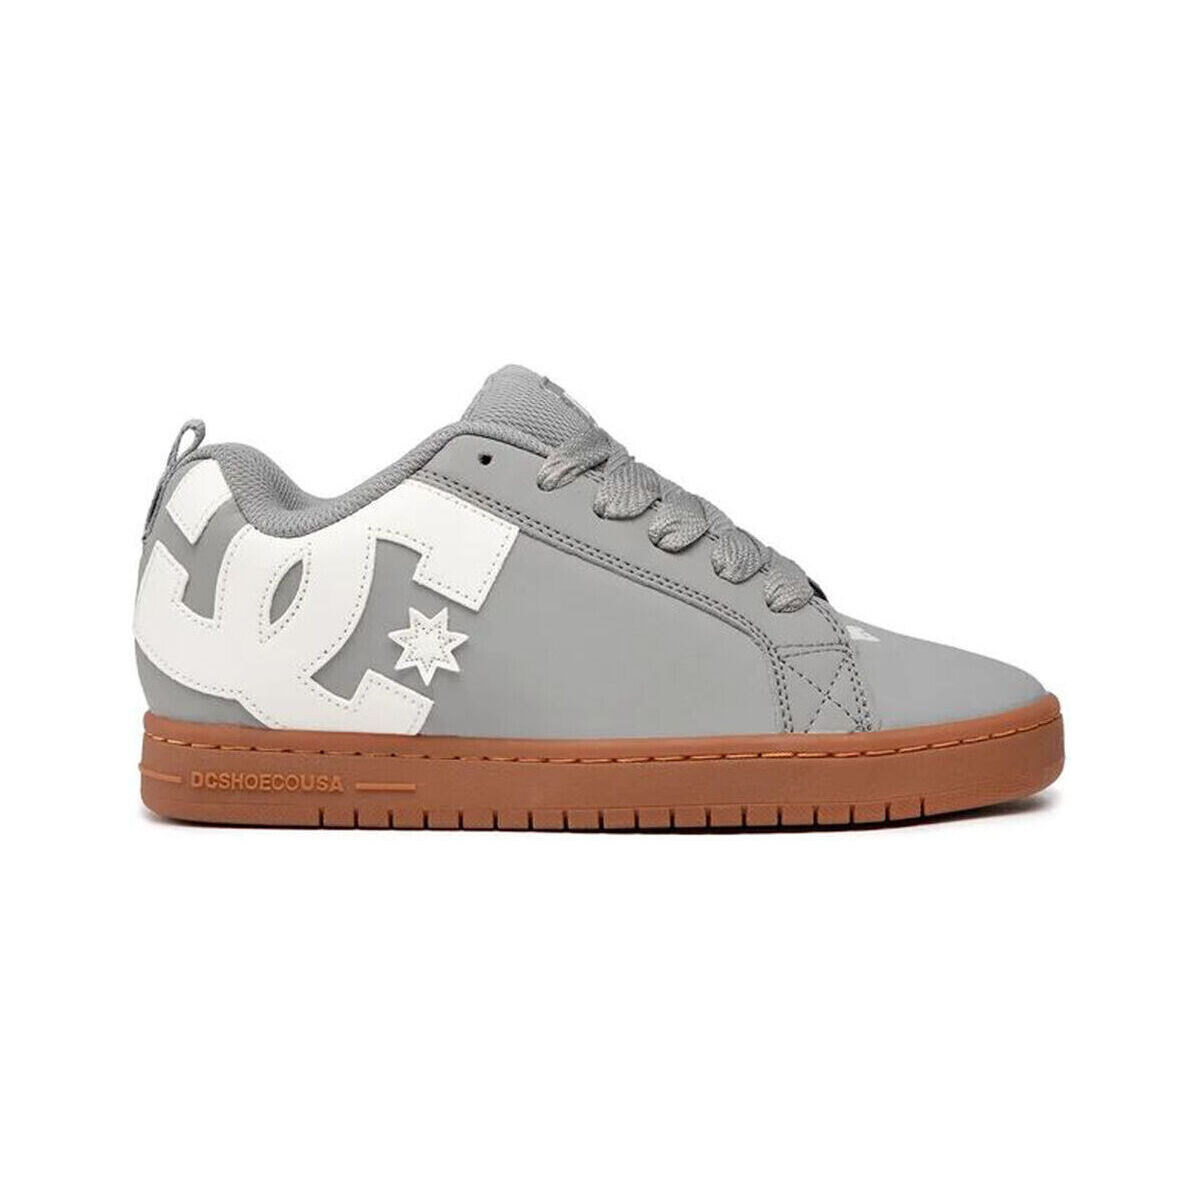 Παπούτσια Άνδρας Sneakers DC Shoes Court graffik 300529 GREY/GUM (2GG) Grey